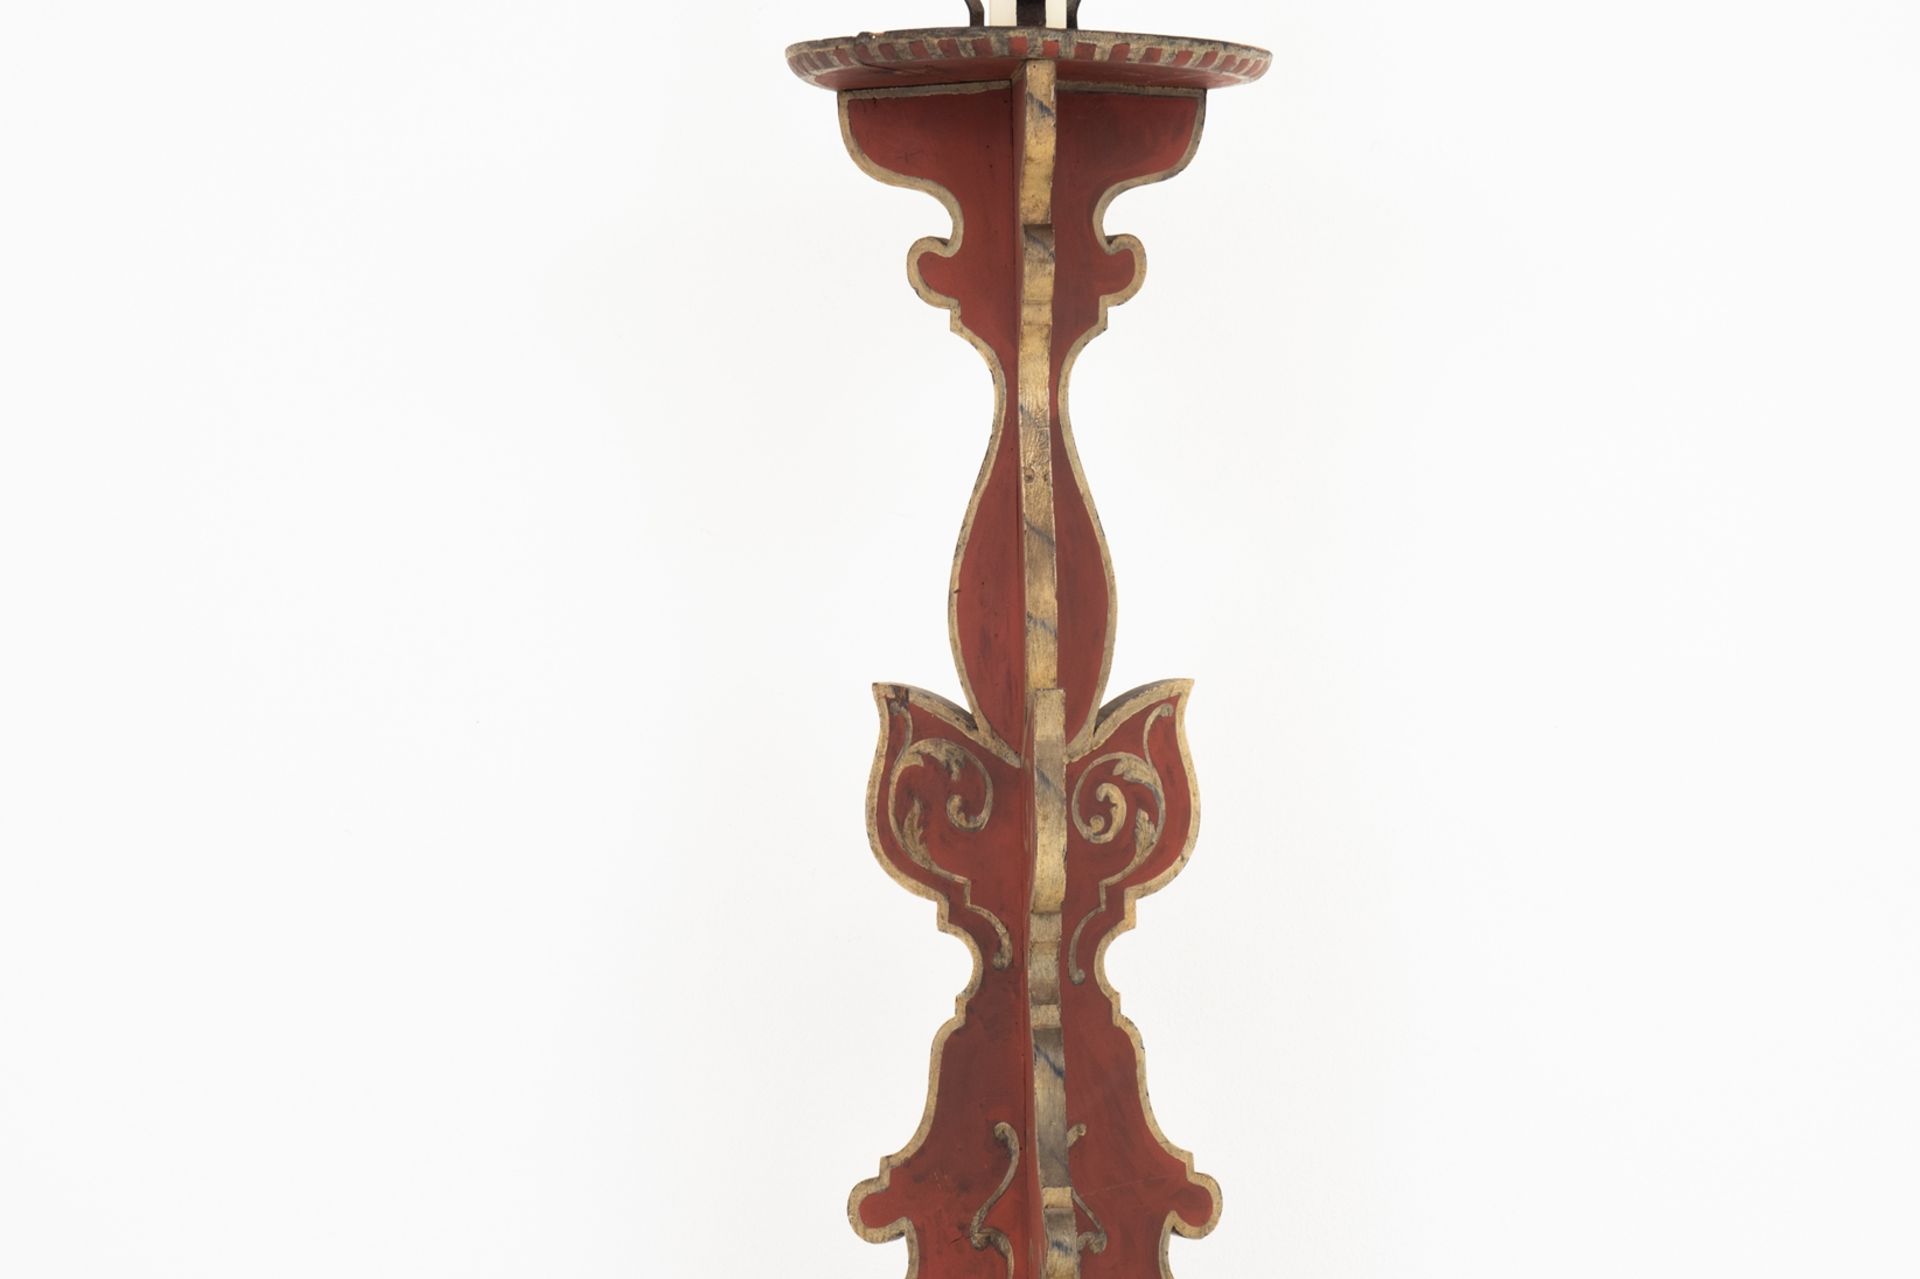 Großer gefasster Holz-Kerzenleuchter | Large cased wooden candleholder - Image 2 of 2